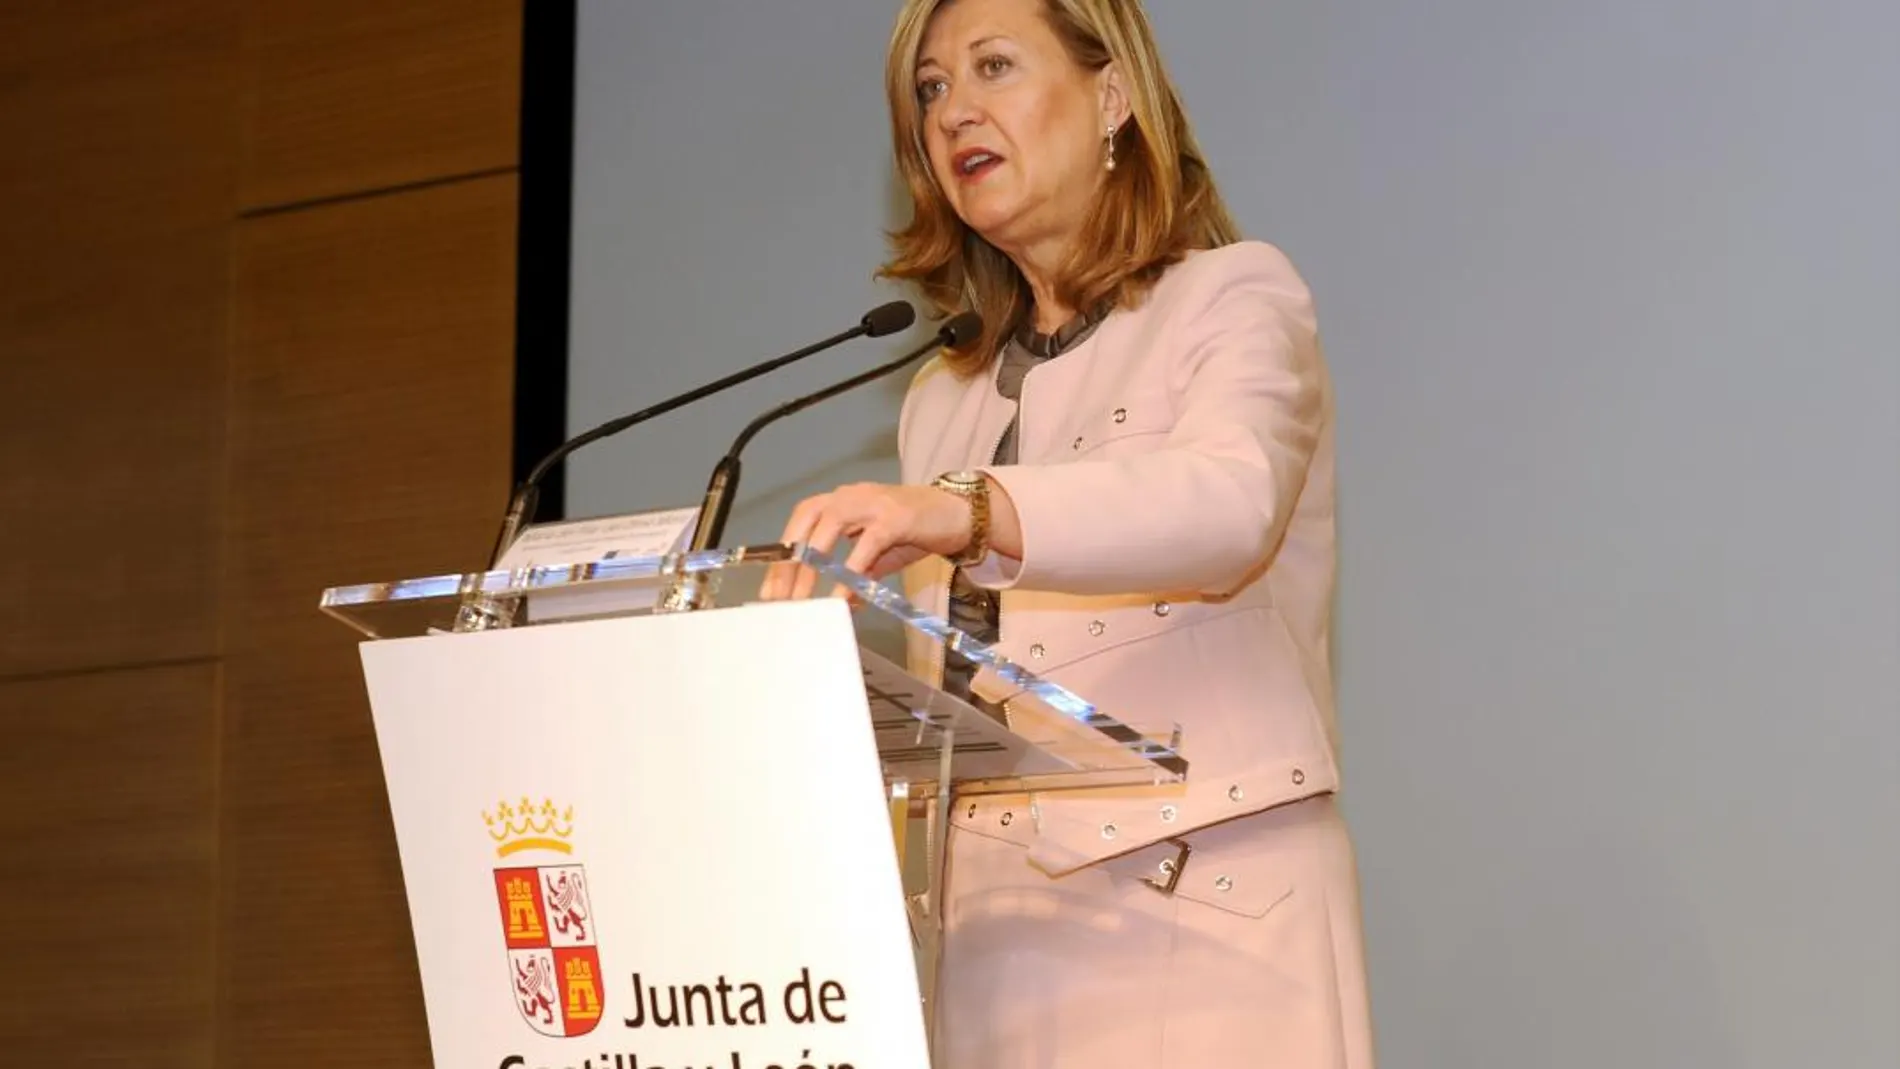 La consejera de Economía y Hacienda, Pilar del Olmo, durante su intervención en la Conferencia Minería Inteligente y Sostenible celebrada en Arroyo de la Encomienda, en Valladolid